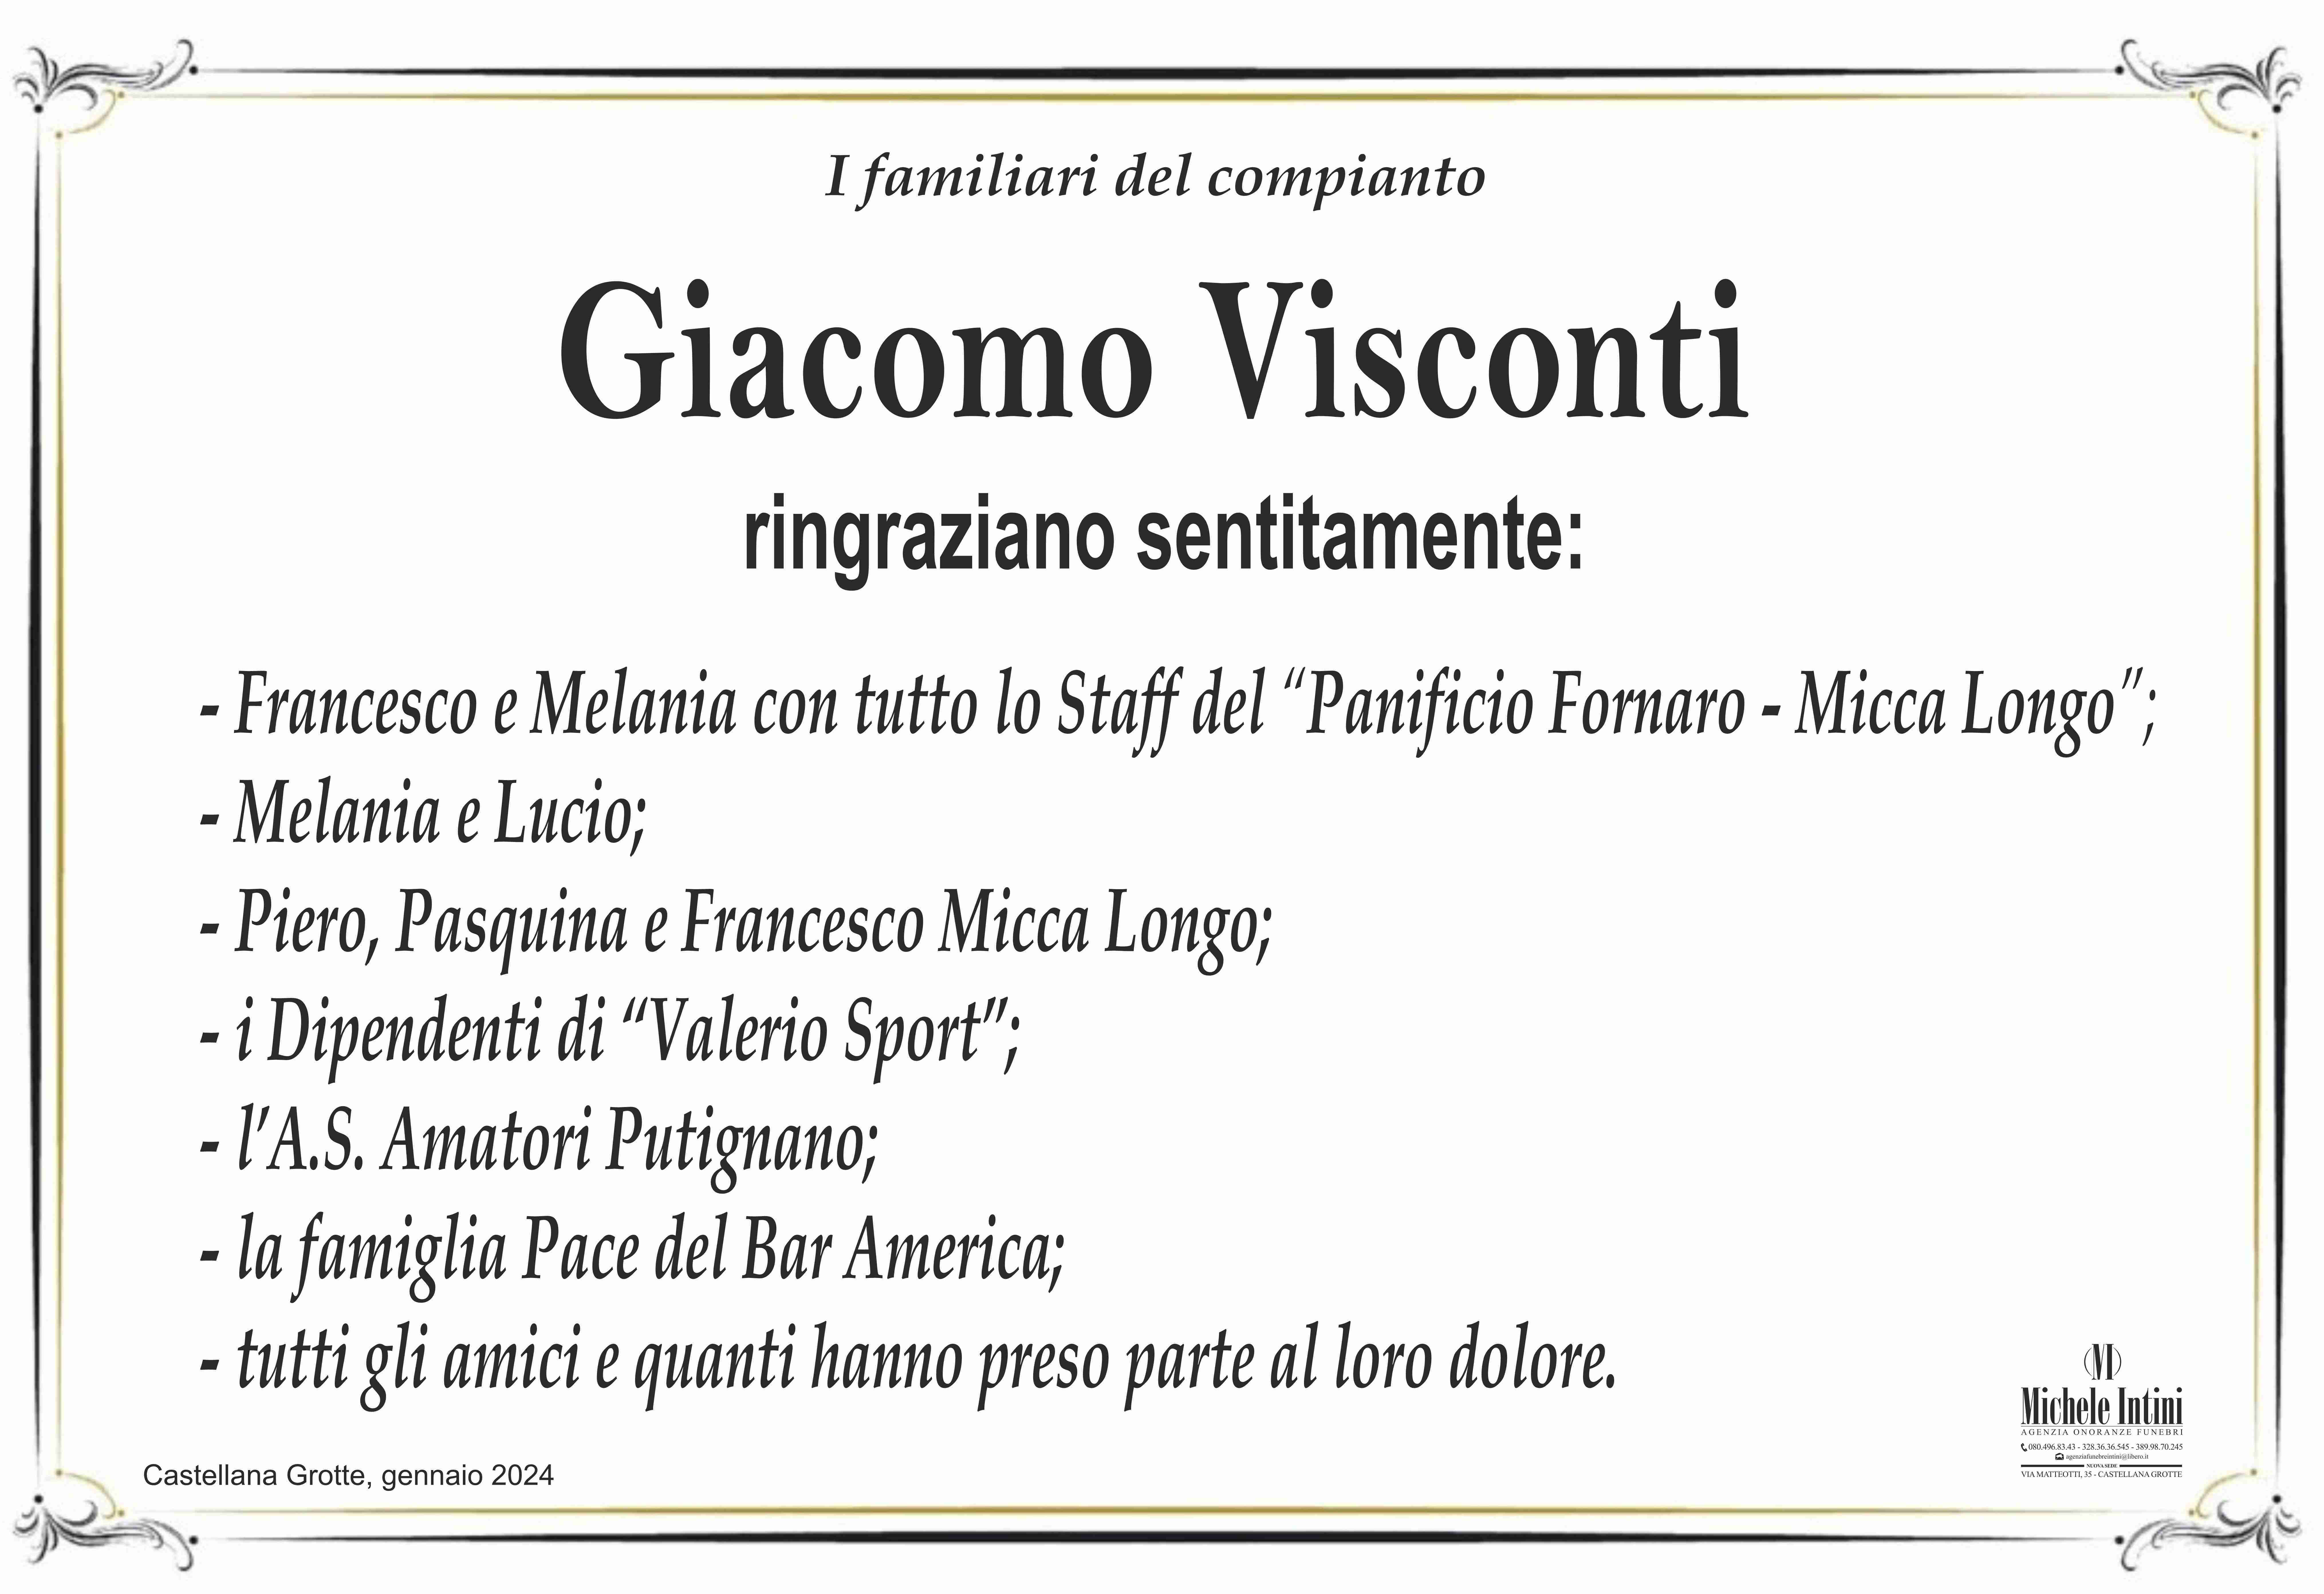 Giacomo Visconti